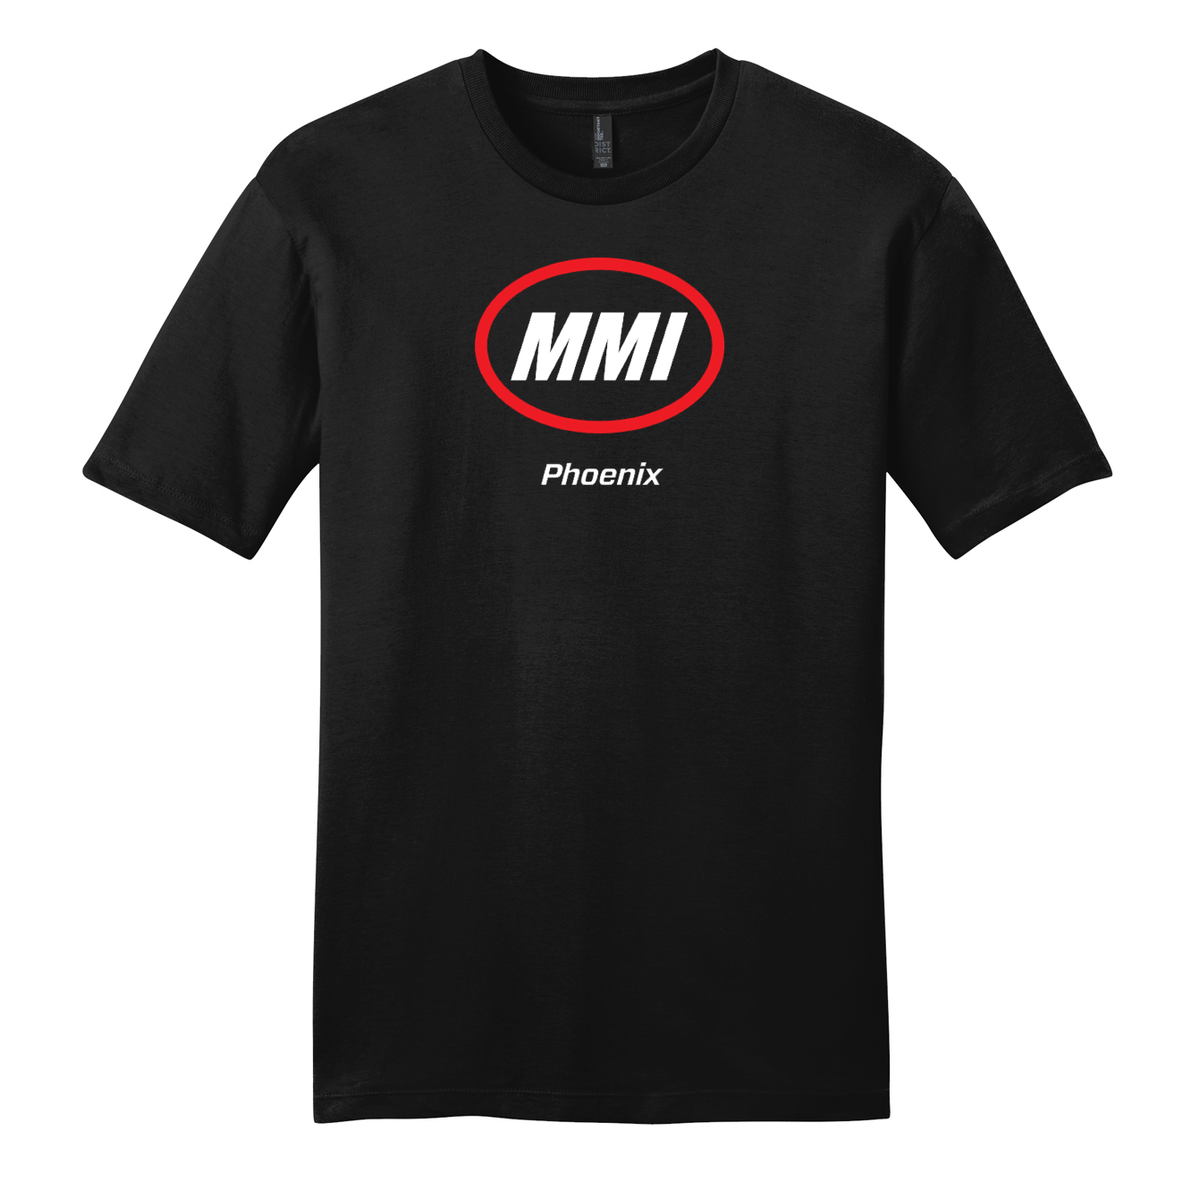 MMI Phoenix Campus T-Shirt